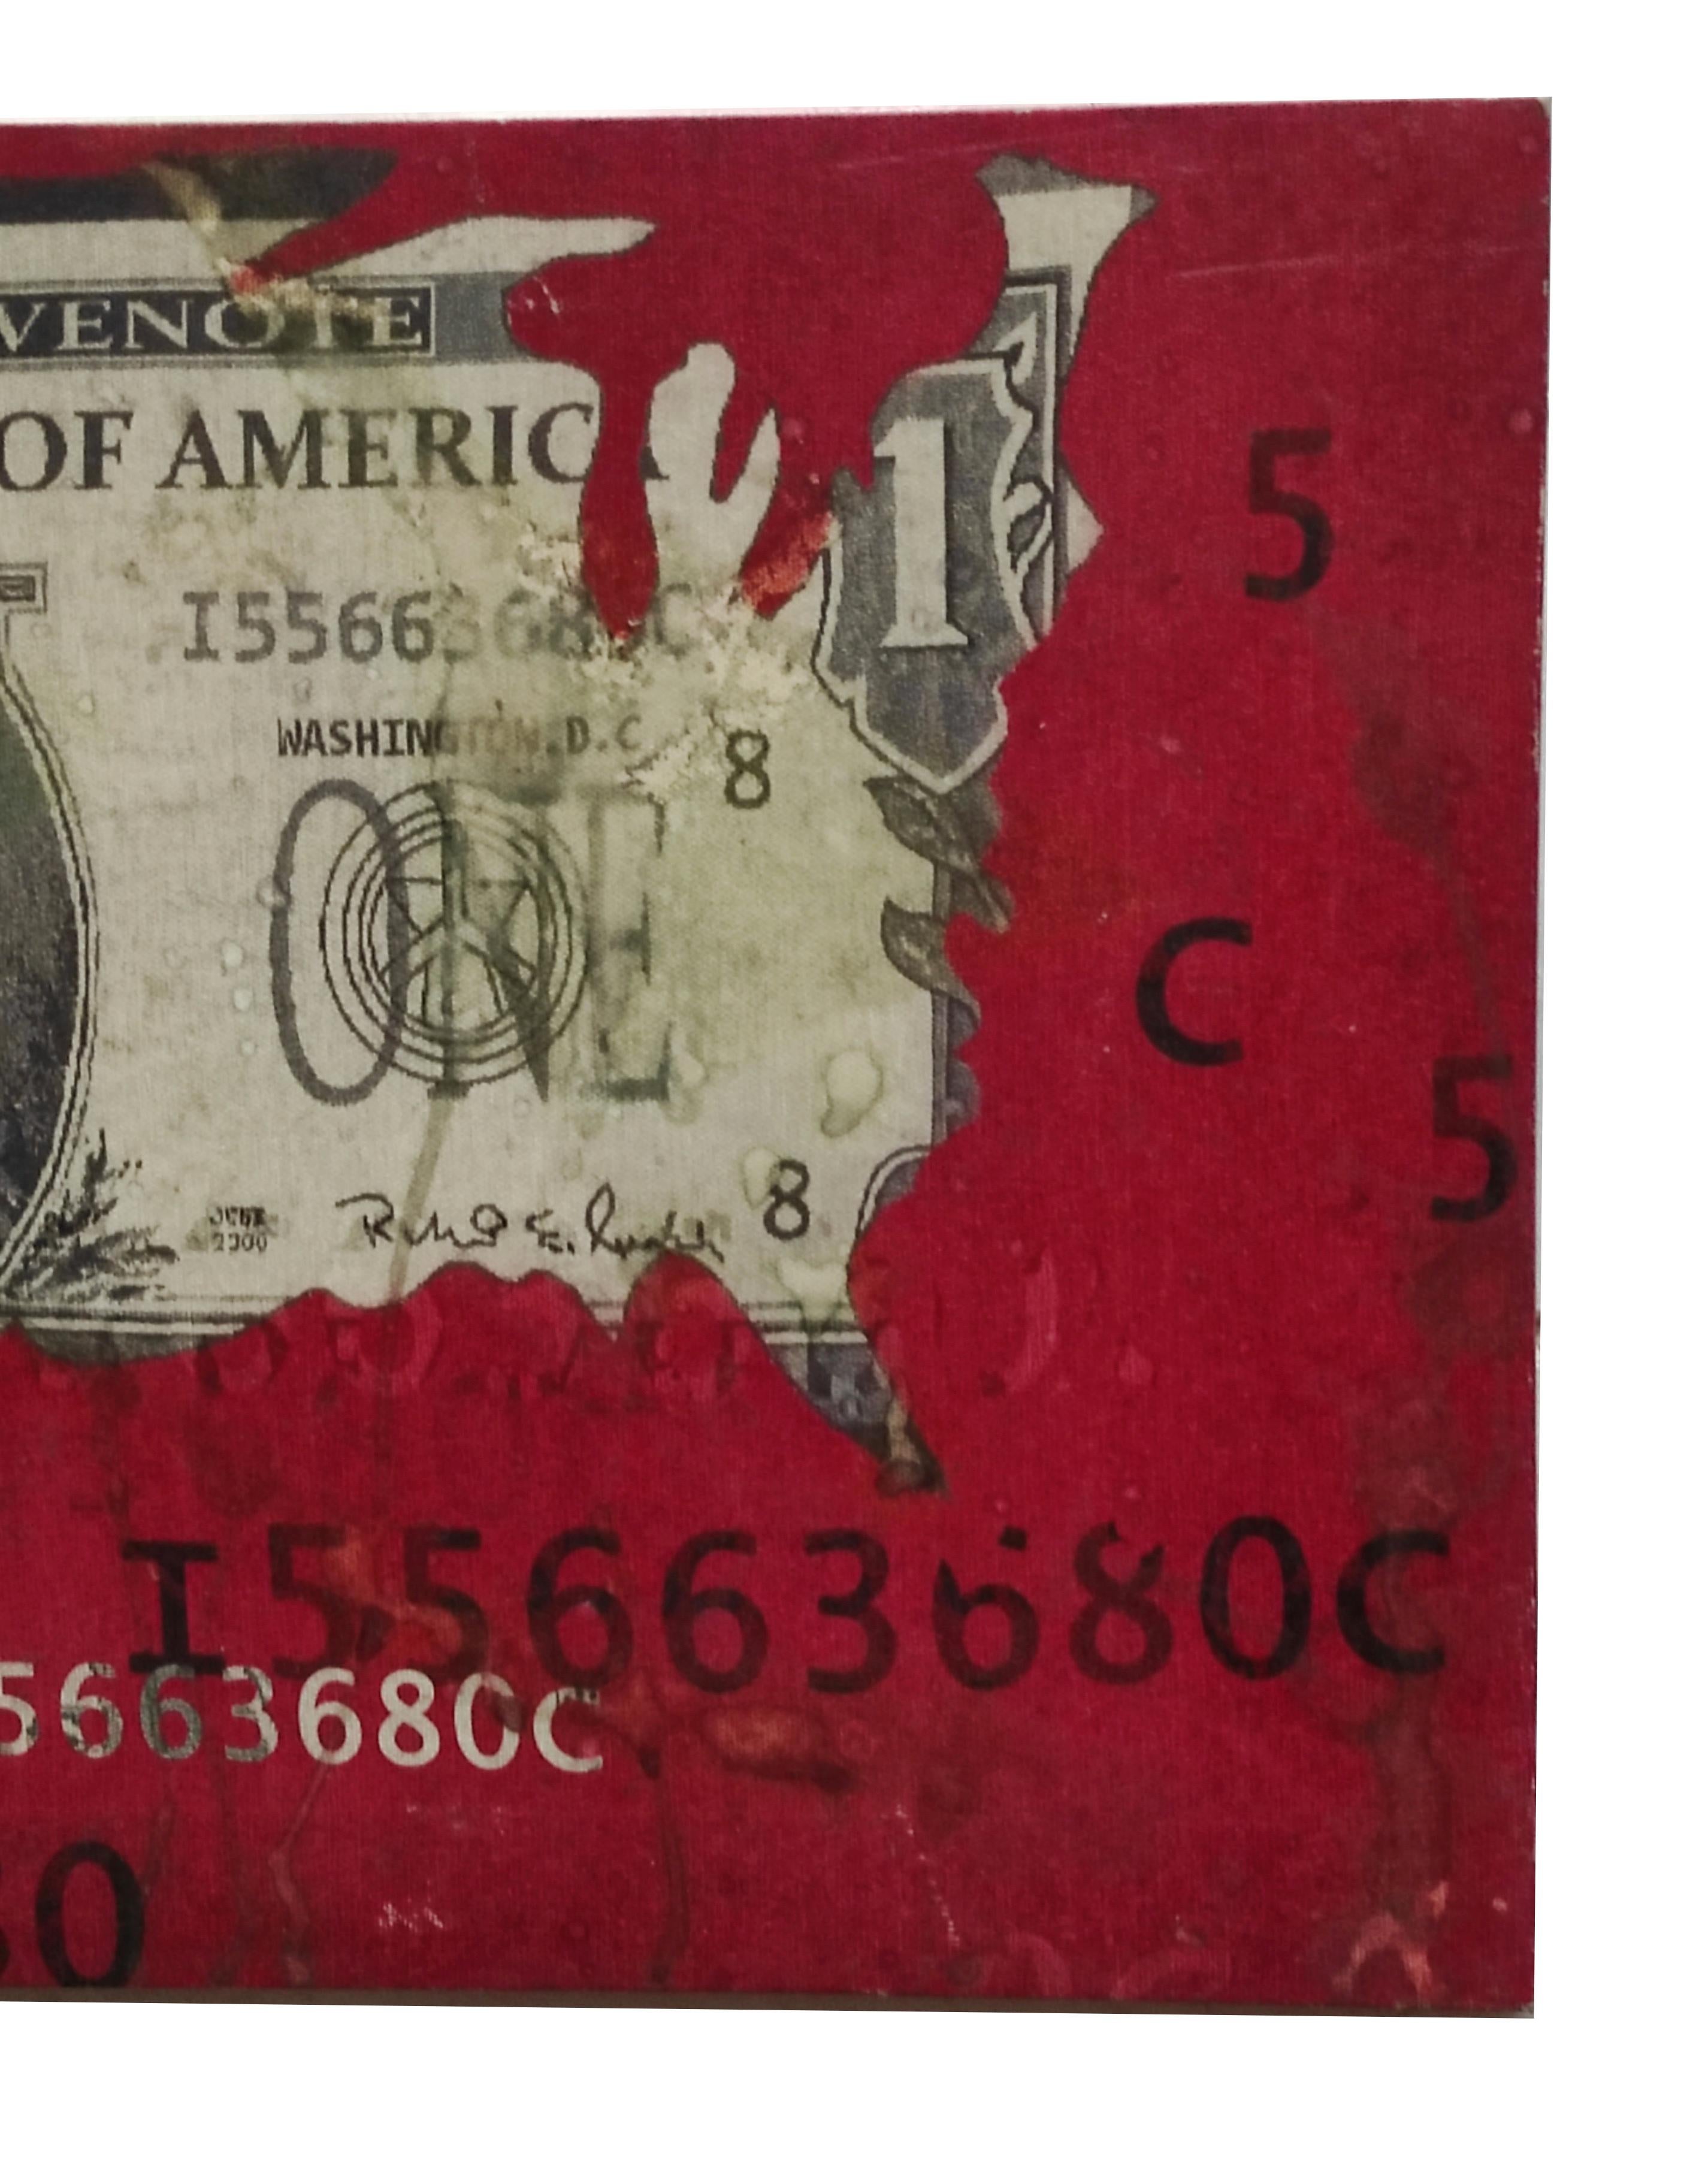 Stampa su tela raffigurante un dollaro Americano dipinto di rosso